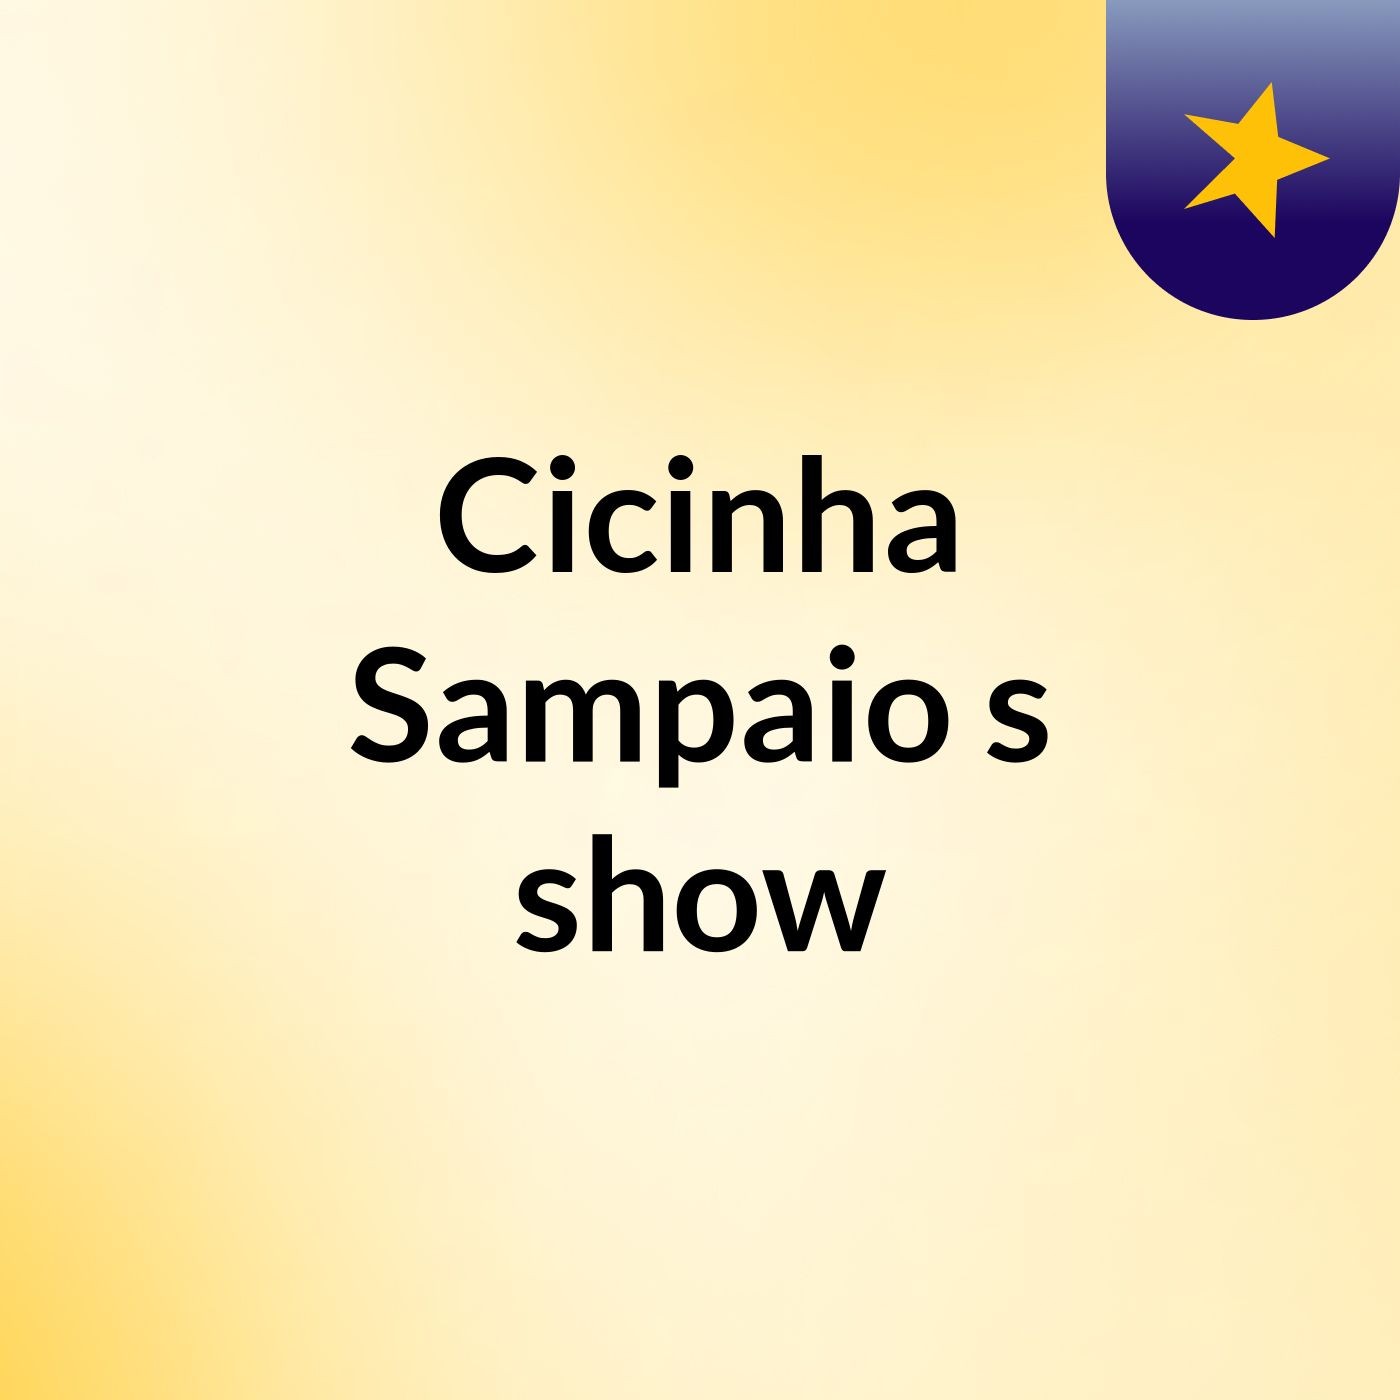 Cicinha Sampaio's show